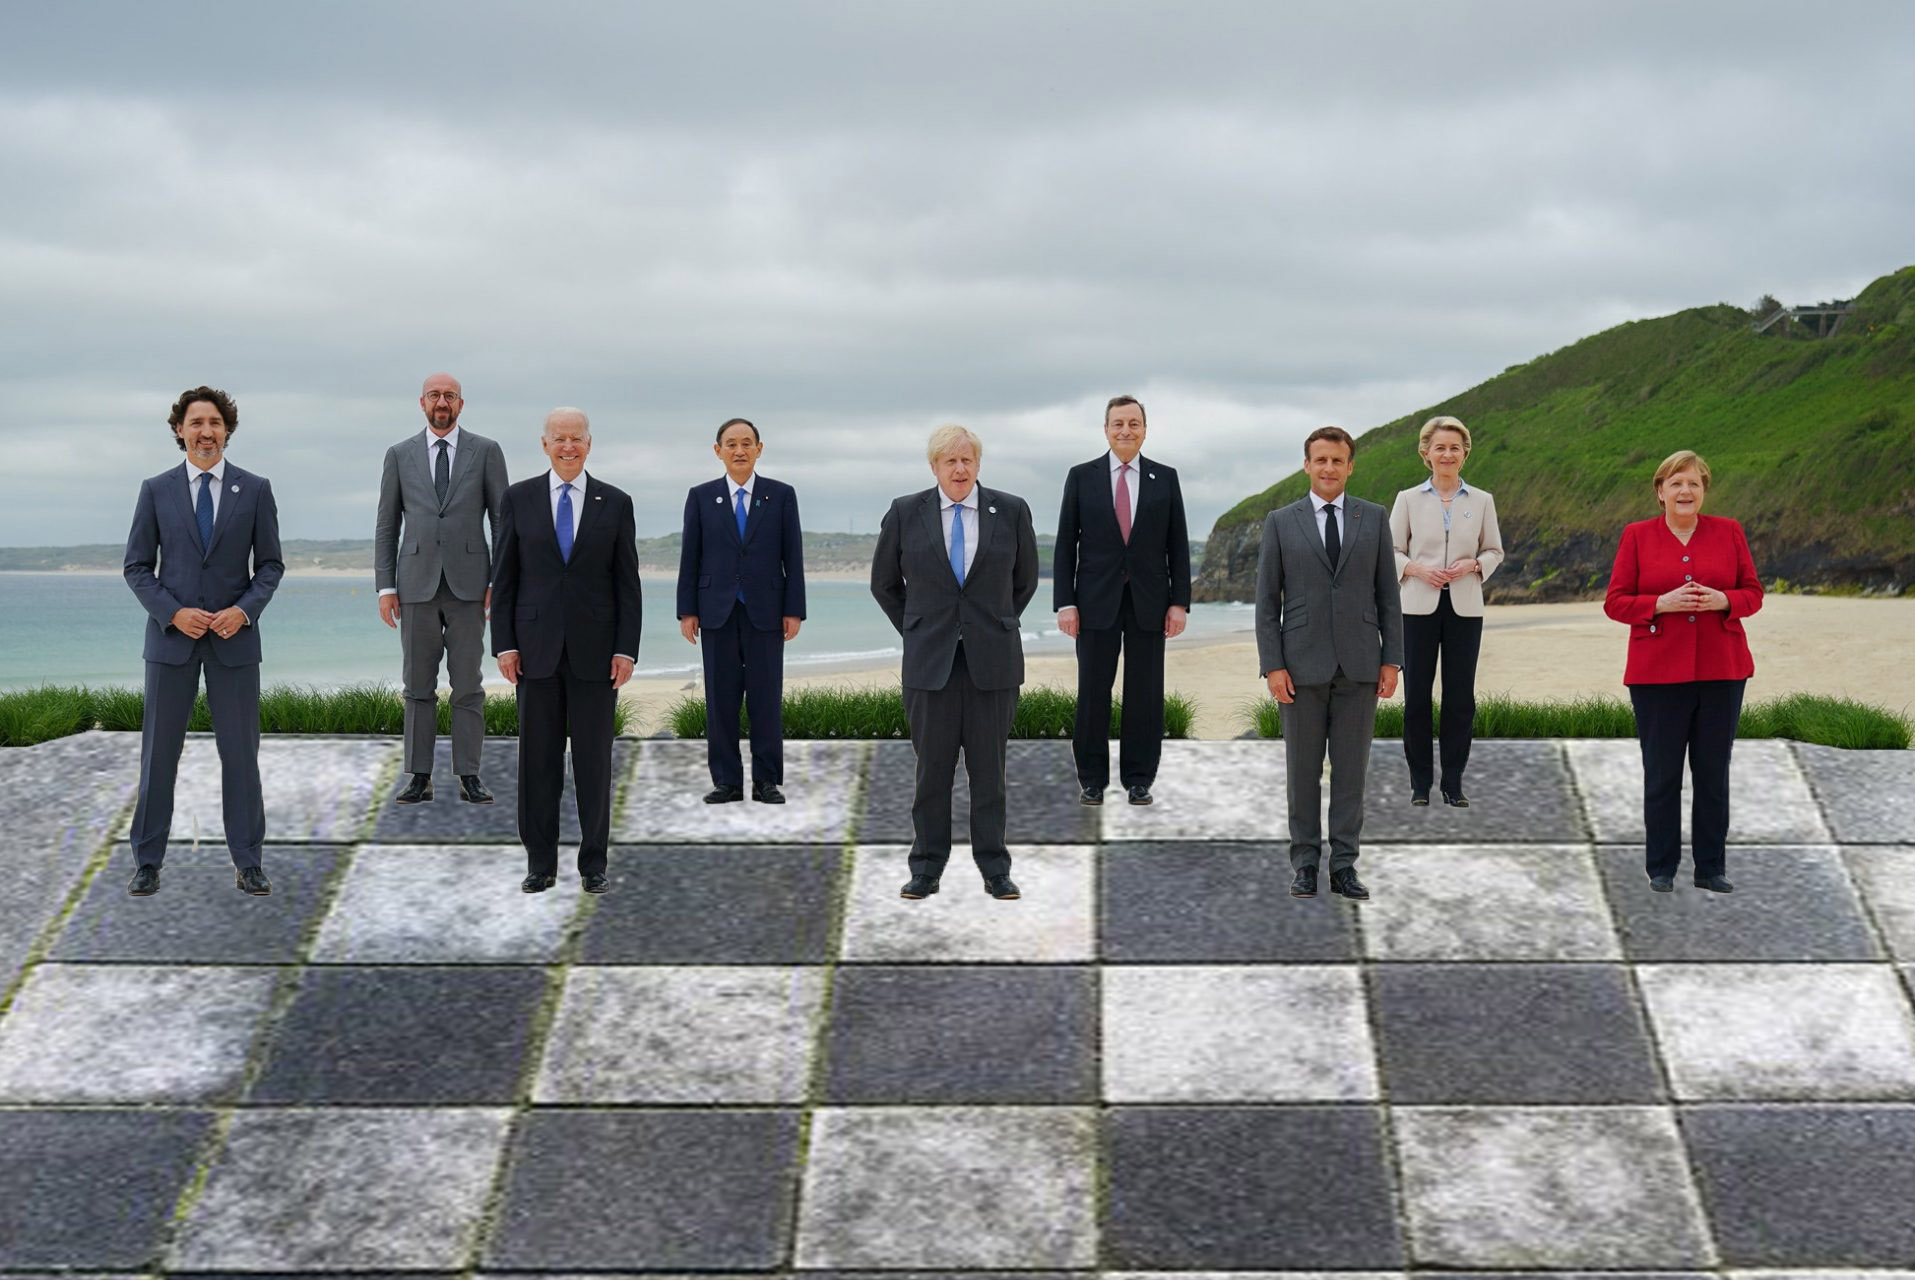 chess rothschild chess set g7 summit pieces globalist pricks